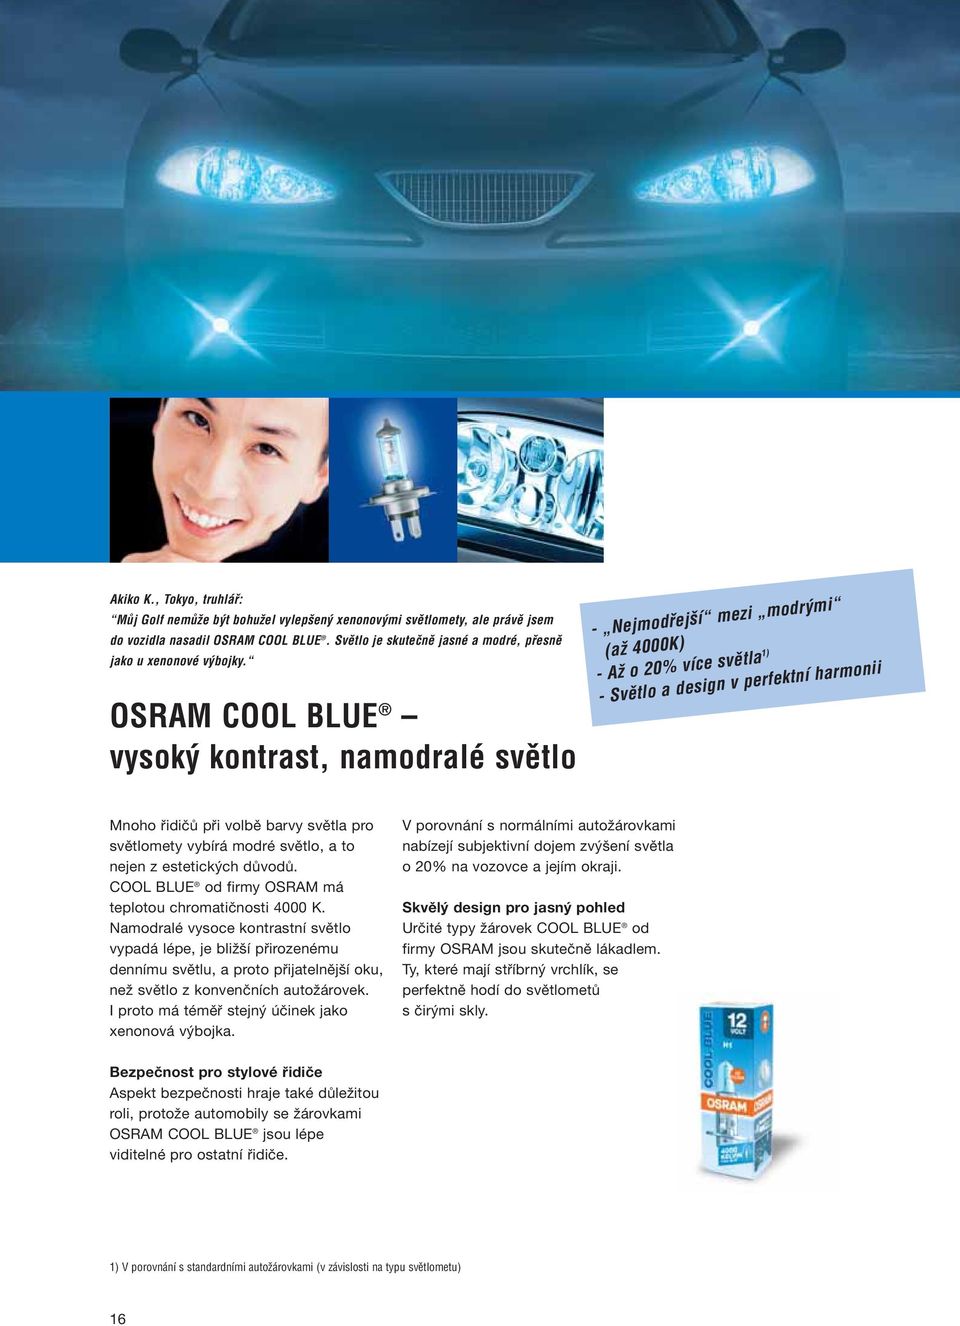 OSRAM COOL BLUE vysok kontrast, namodralé svûtlo - Nejmodfiej í mezi modr mi (aï 4000K) - AÏ o 20% více svûtla 1) - Svûtlo a design v perfektní harmonii Mnoho řidičů při volbě barvy světla pro